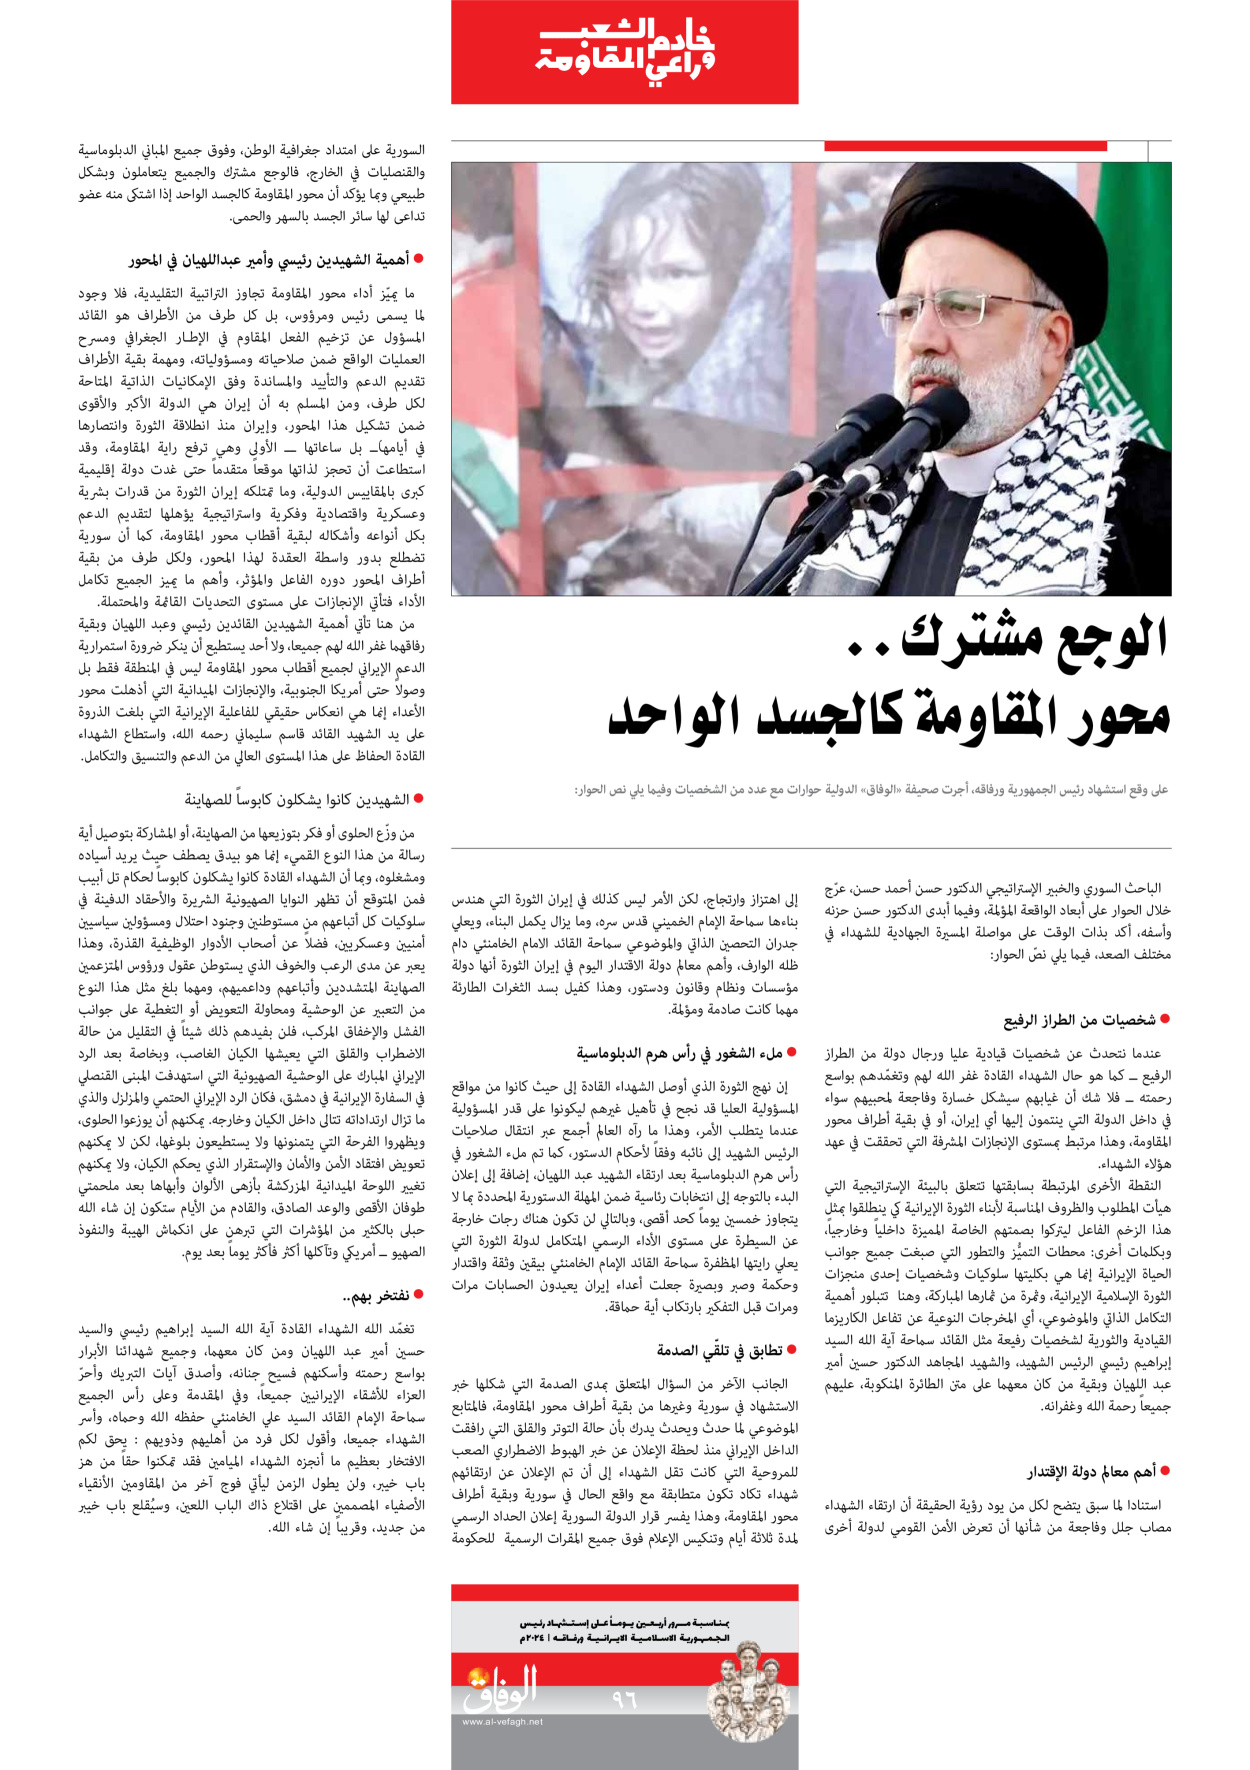 صحیفة ایران الدولیة الوفاق - ملحق ویژه نامه چهلم شهید رییسی - ٢٩ يونيو ٢٠٢٤ - الصفحة ۹٥